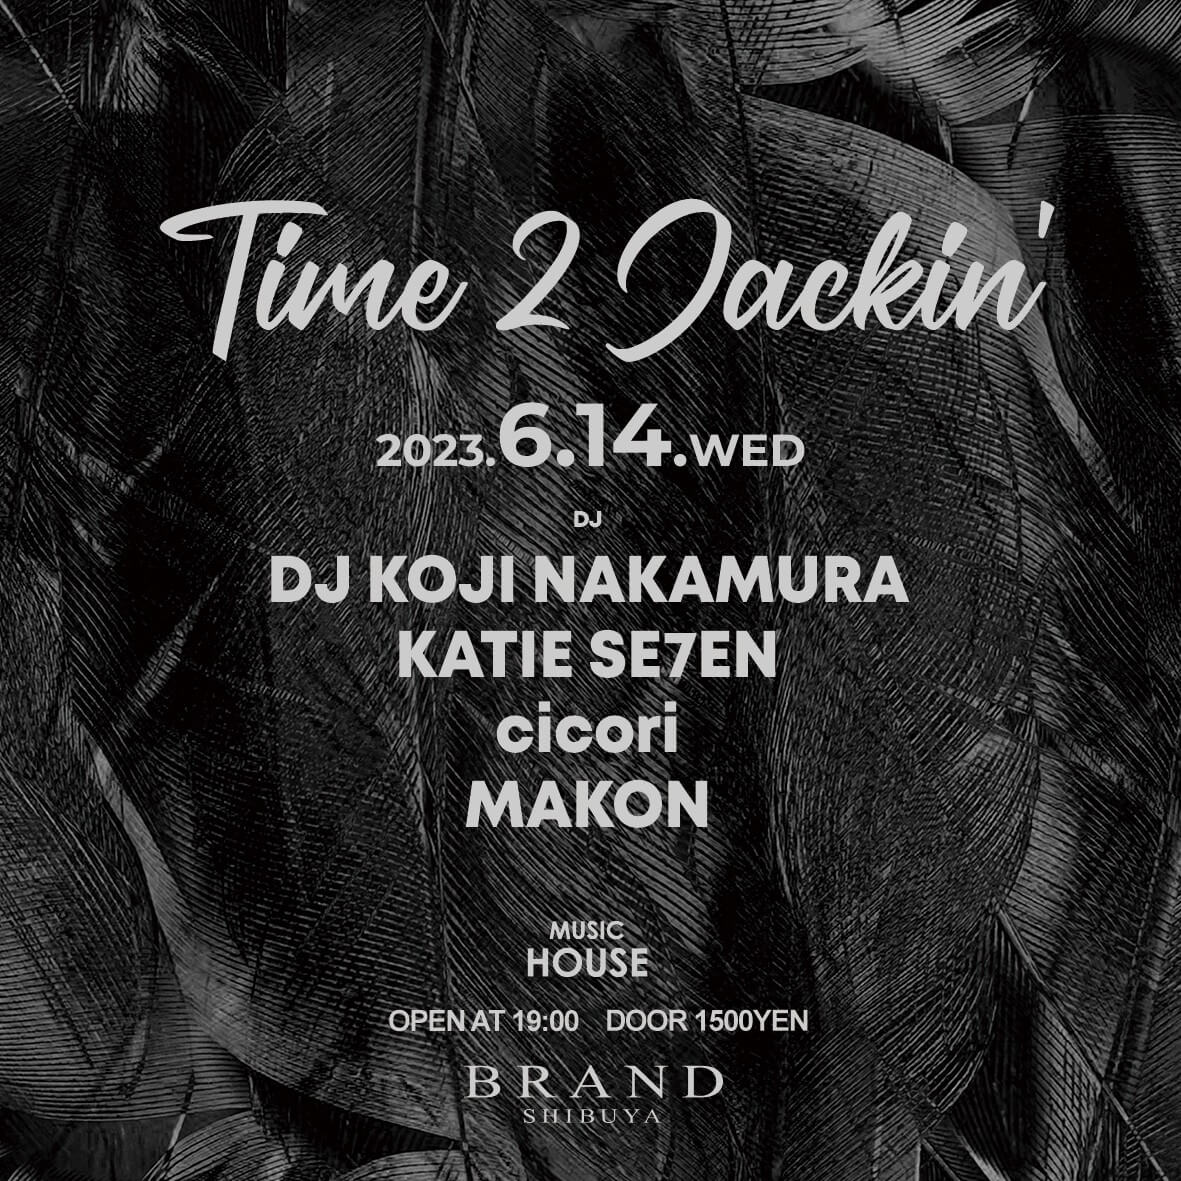 Time 2 Jackin 2023年06月14日（水曜日）に渋谷 クラブのBRAND SHIBUYAで開催されるHOUSEイベント